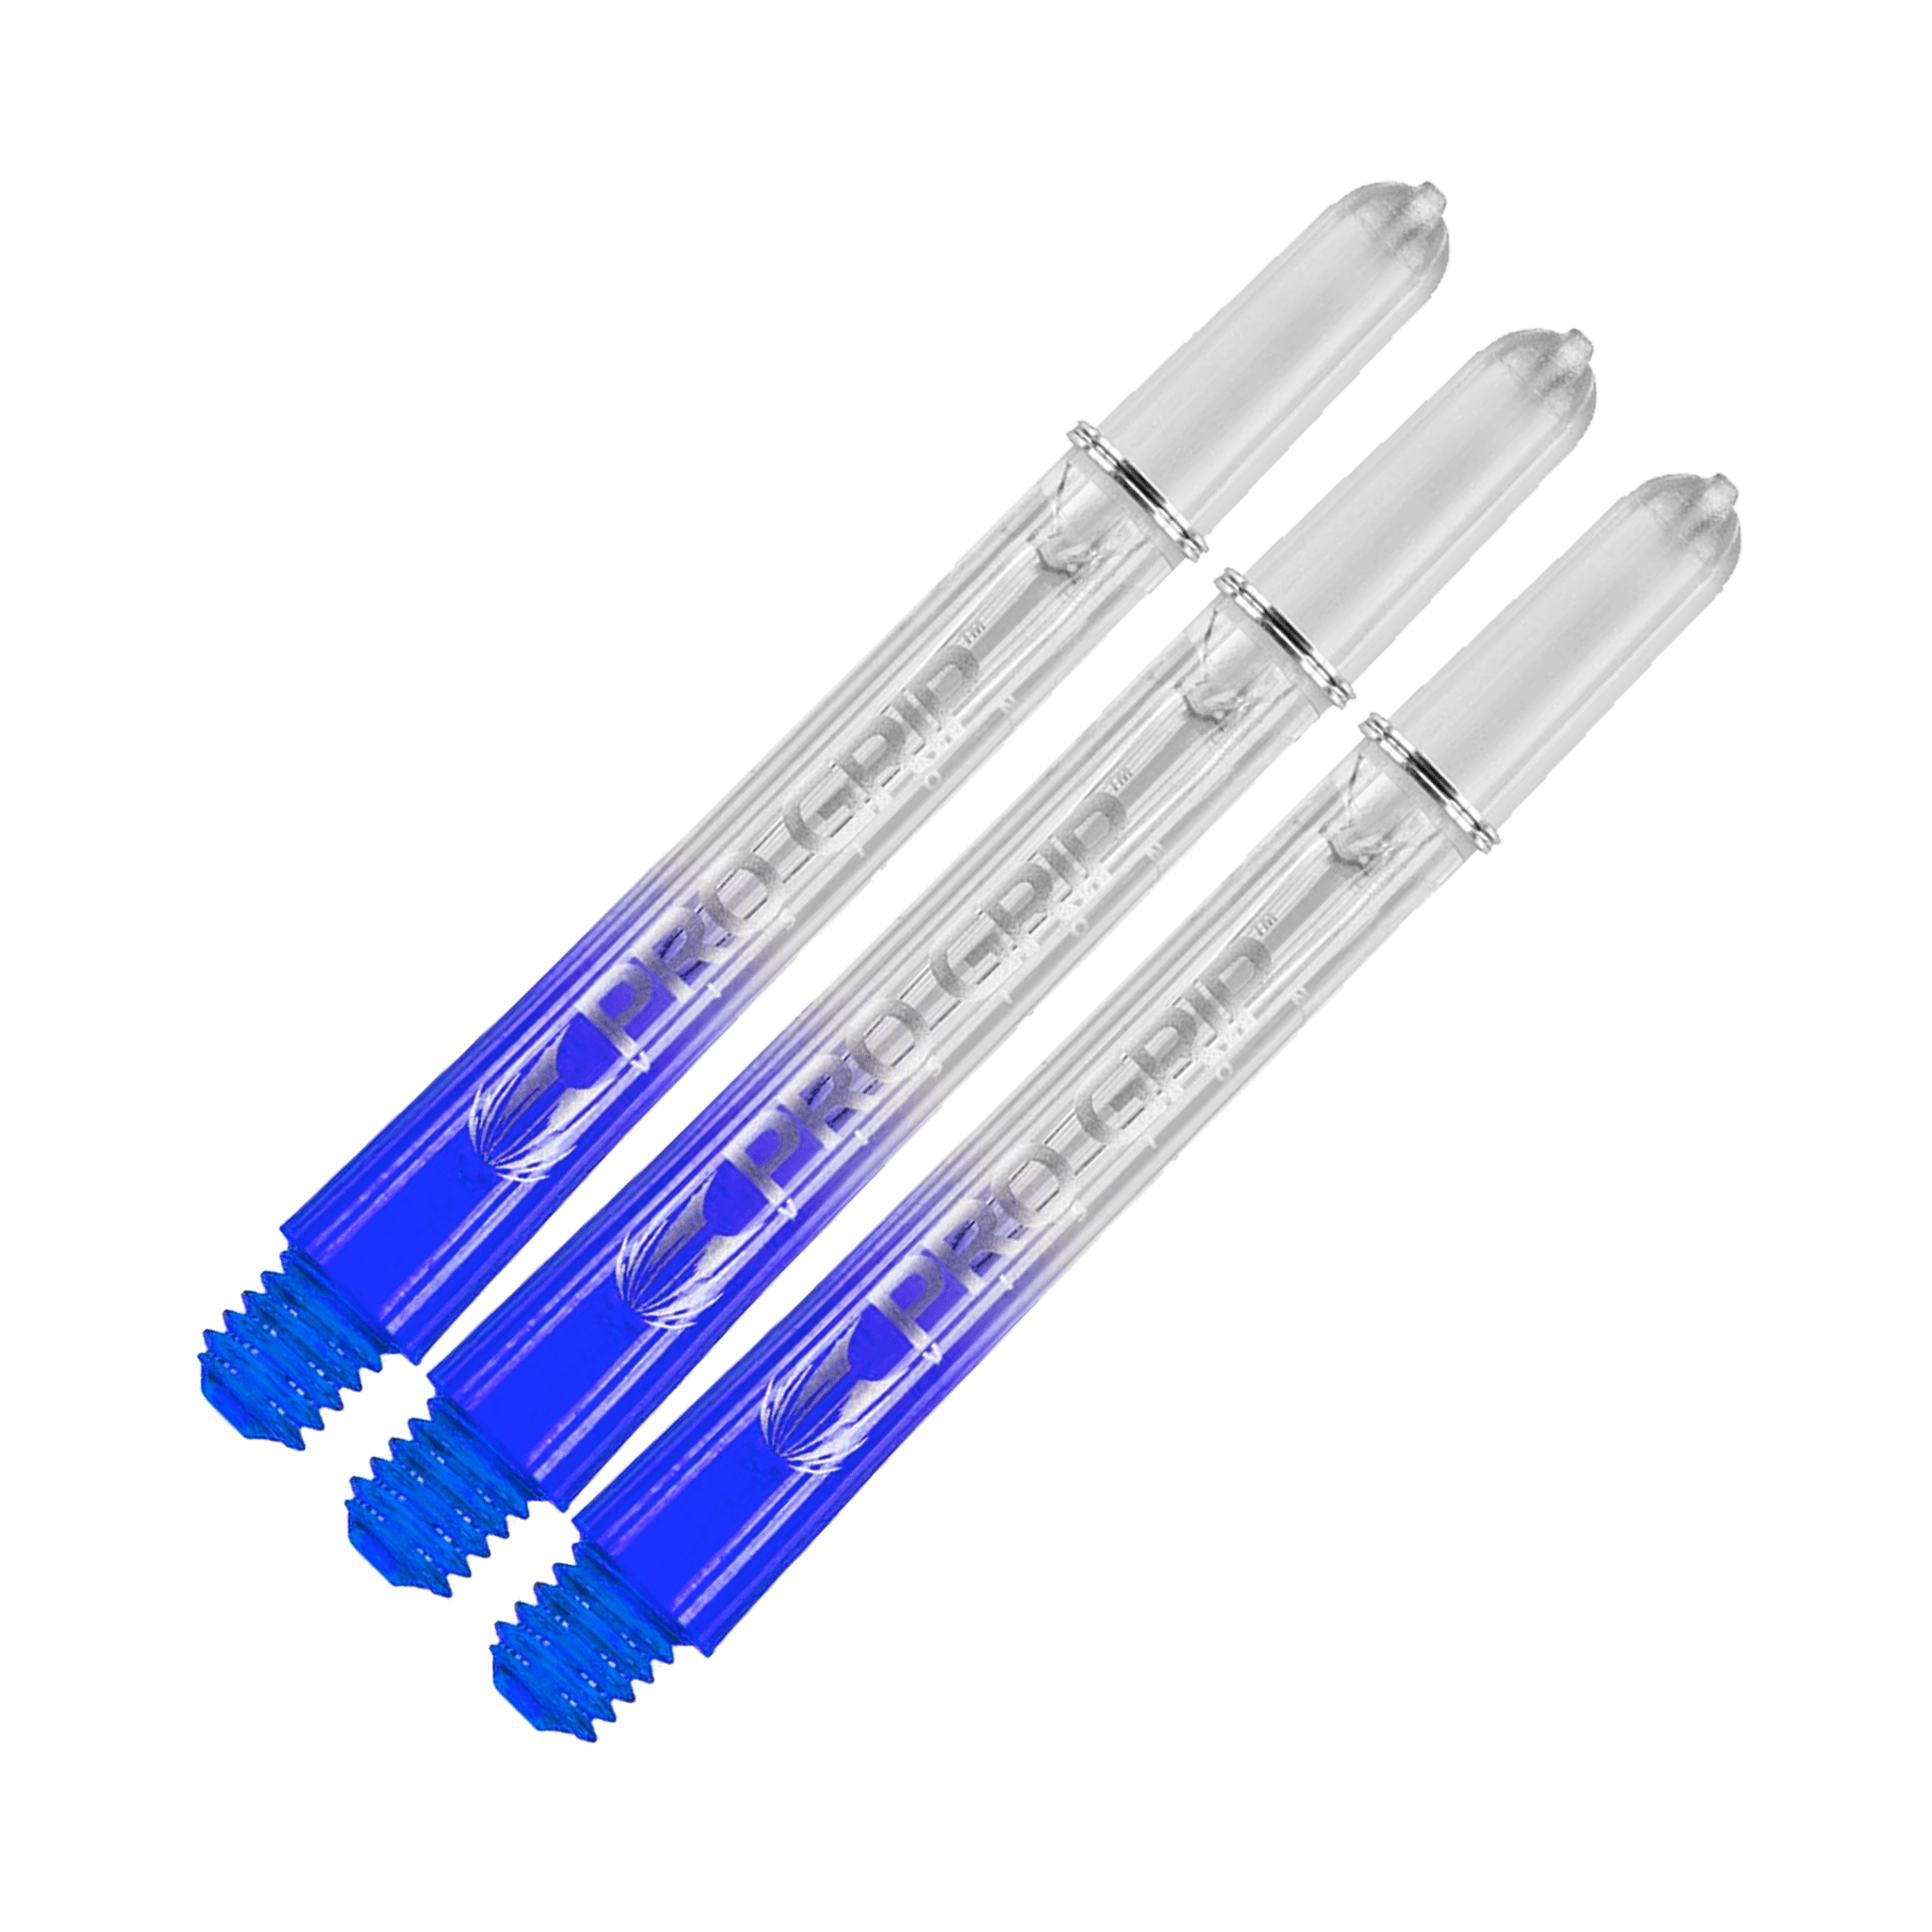 Target Pro Vision - Polycarbonate Dart Shafts Medium (48mm) / Blue Shafts